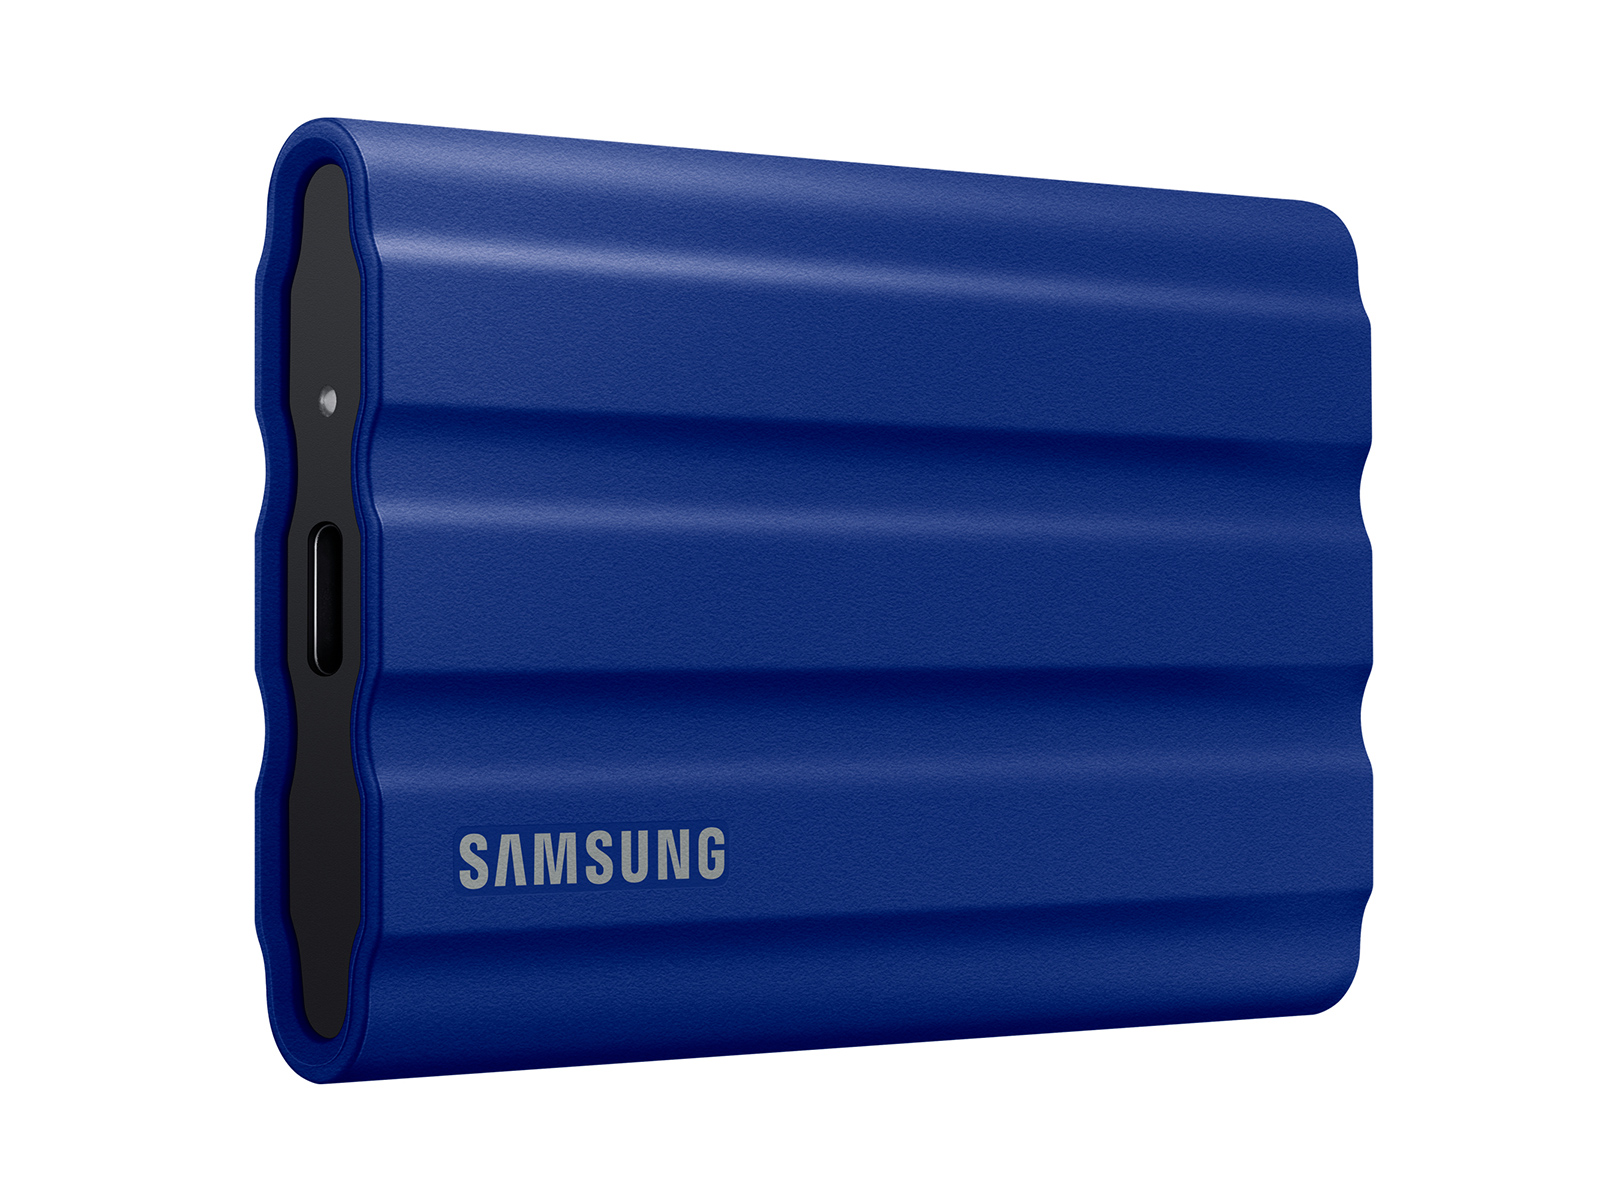 Portable SSD T7 Shield USB 3.2 1TB (Blue) Memory & Storage - MU-PE1T0R/AM